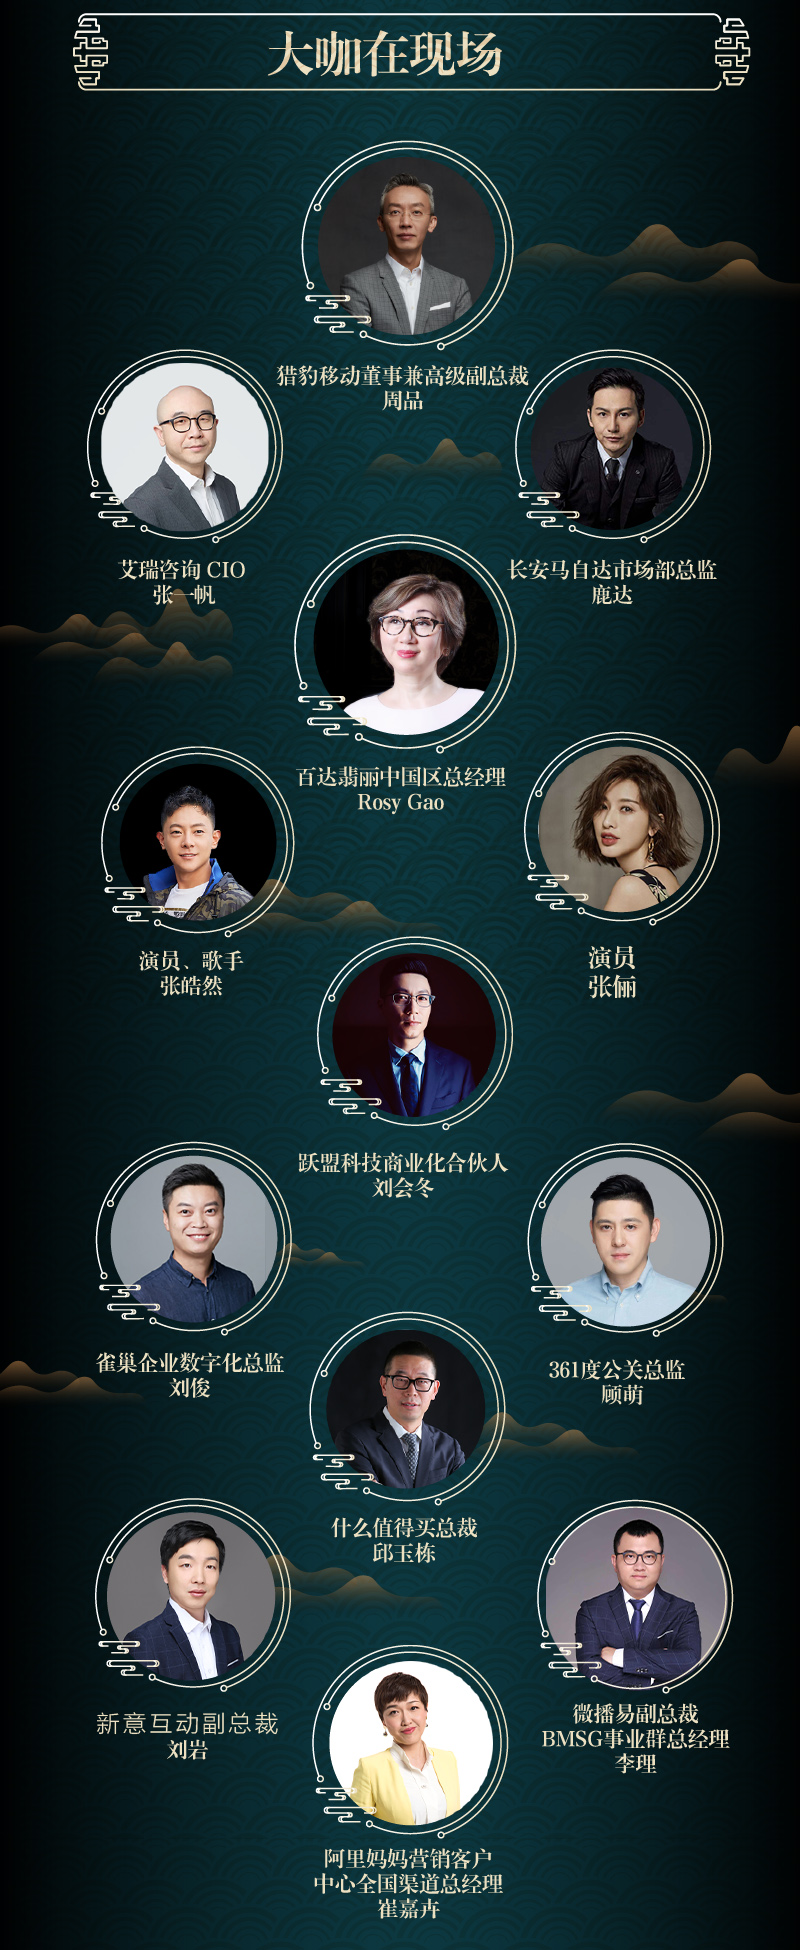 2020商业计划领航秀-2019金网奖营销科技峰会（北京）